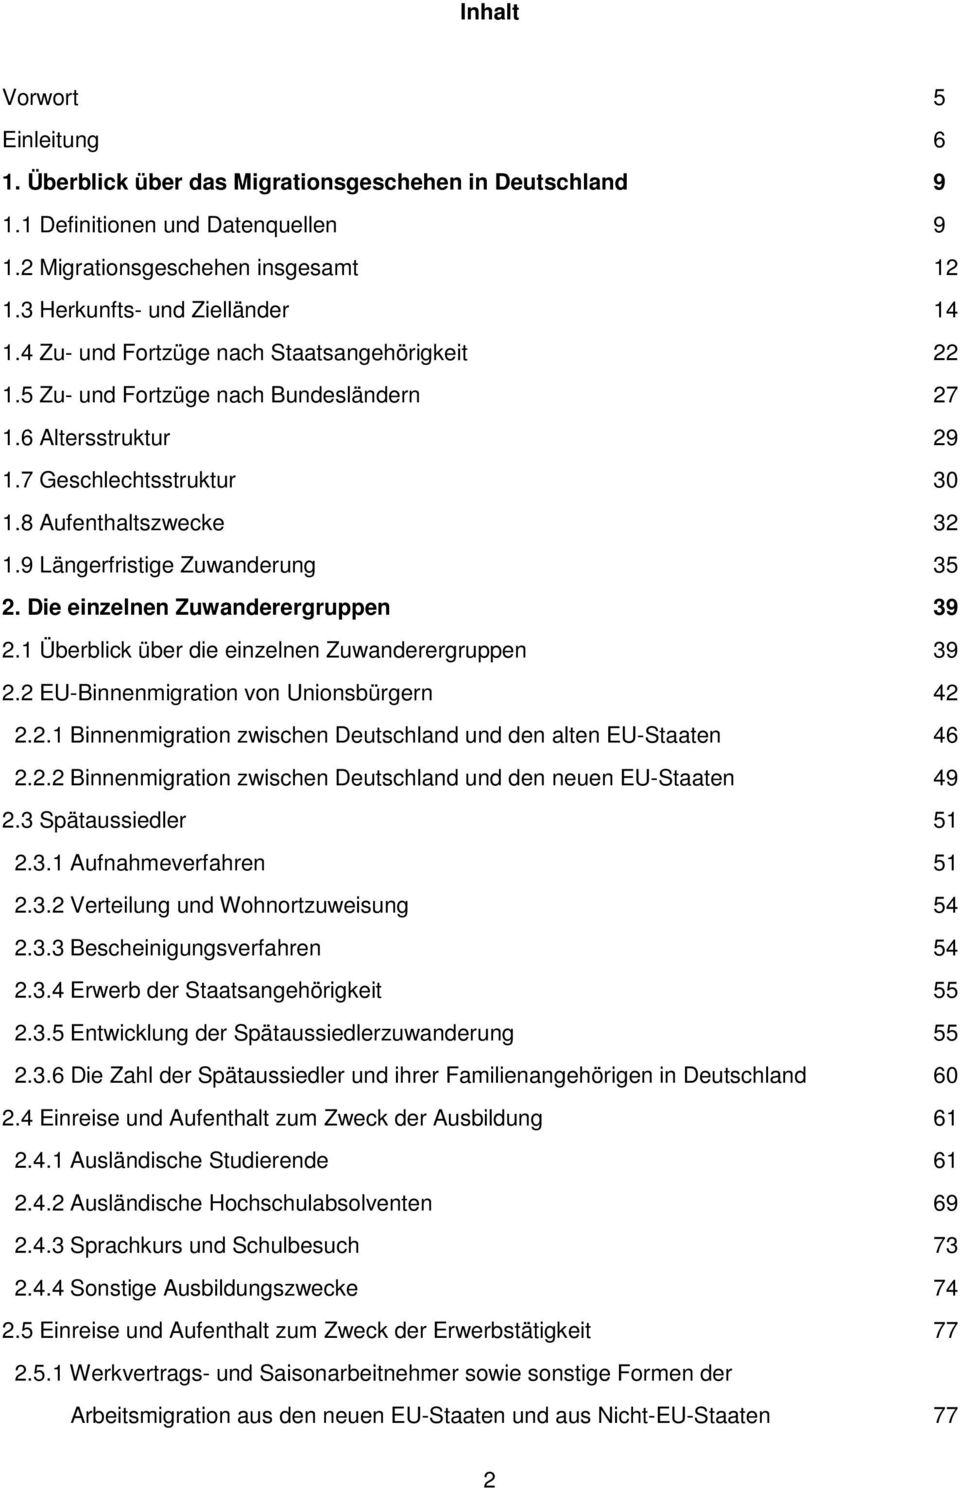 Die einzelnen Zuwanderergruppen 39 2.1 Überblick über die einzelnen Zuwanderergruppen 39 2.2 EU-Binnenmigration von Unionsbürgern 42 2.2.1 Binnenmigration zwischen Deutschland und den alten EU-Staaten 46 2.